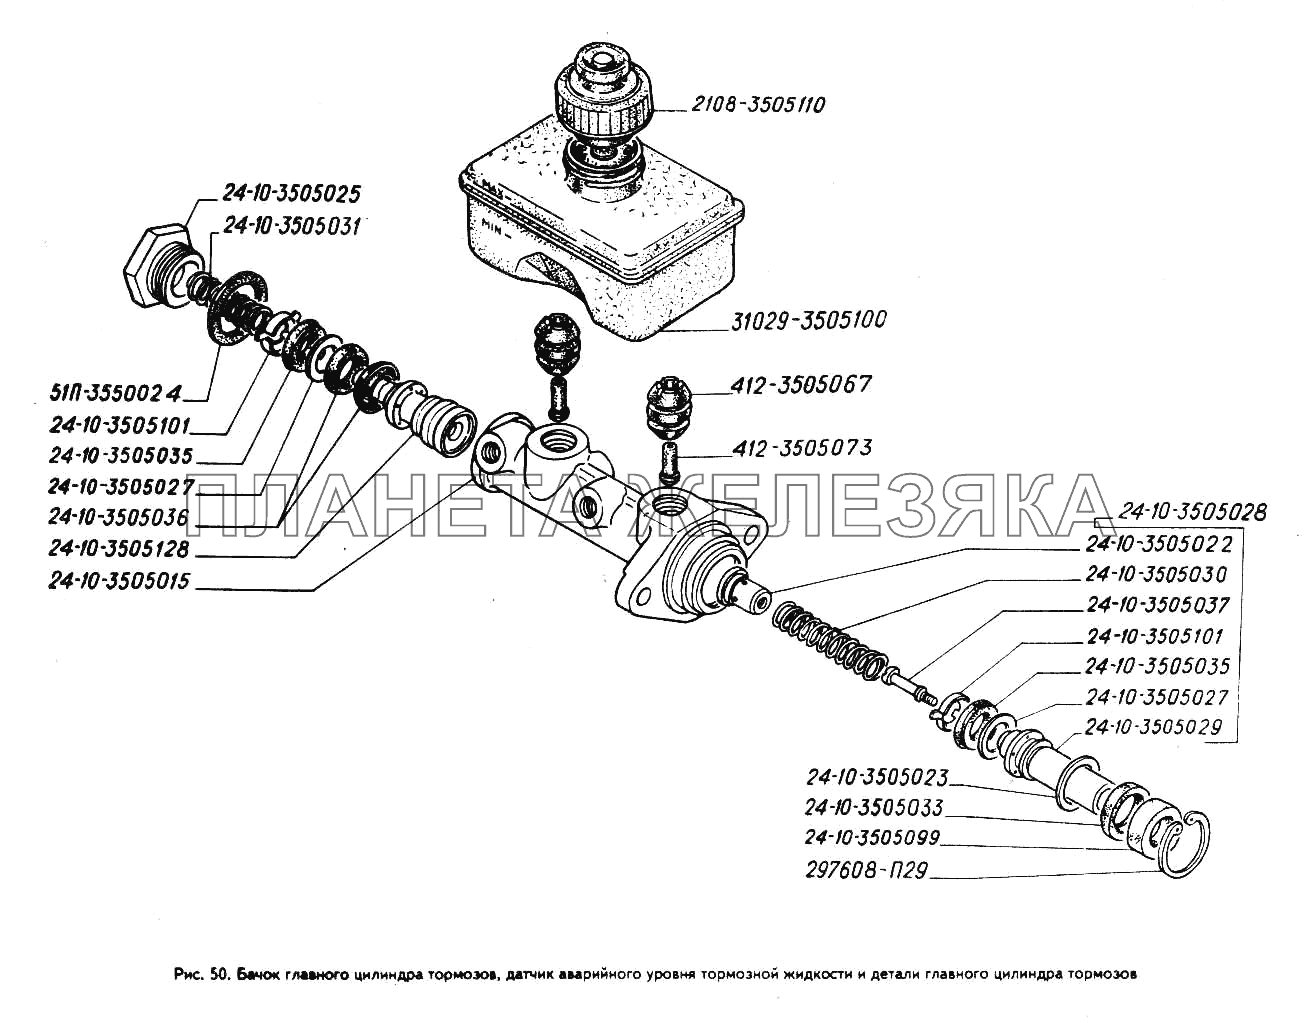 Бачок главного цилиндра тормозов, датчик аварийного уровня тормозной жидкости и детали главного цилиндра тормозов ГАЗ-3302 (ГАЗель)